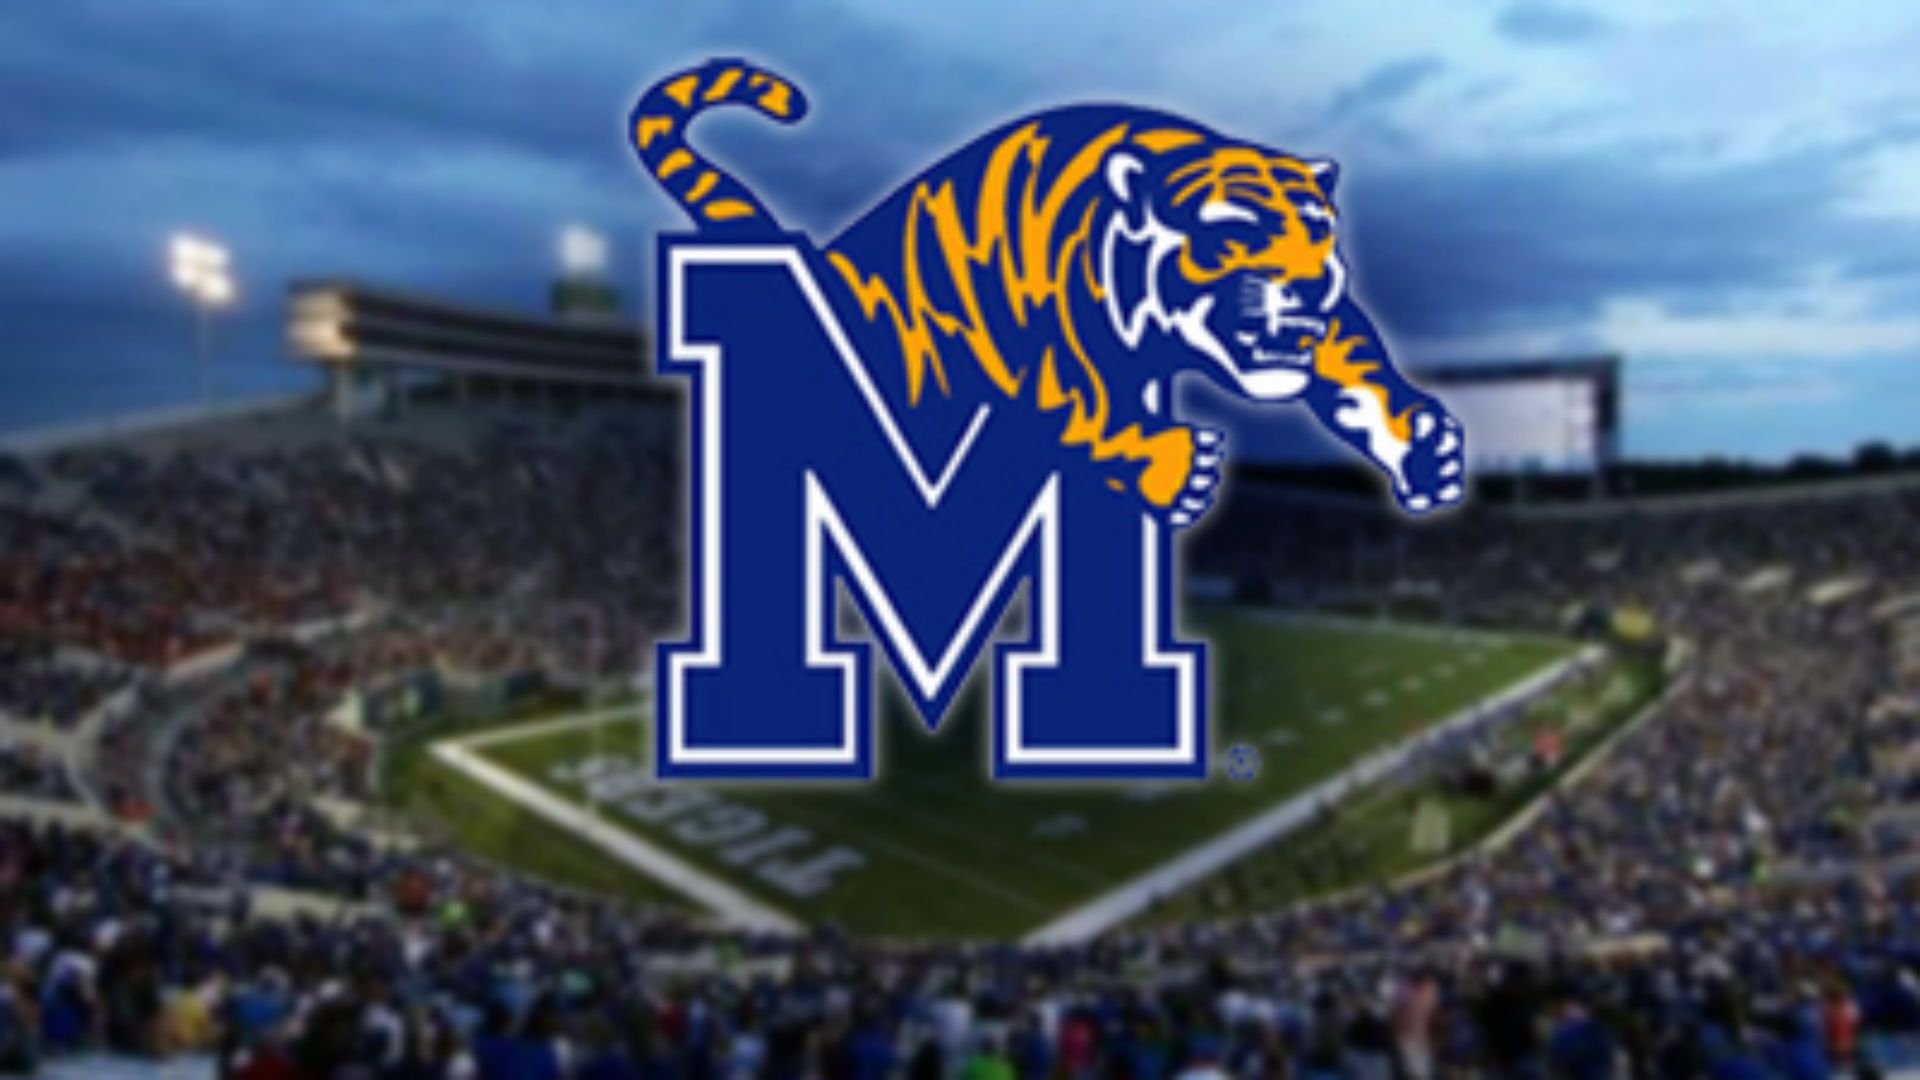 Memphis Tigers up in AP Top 25 poll | UberTopic